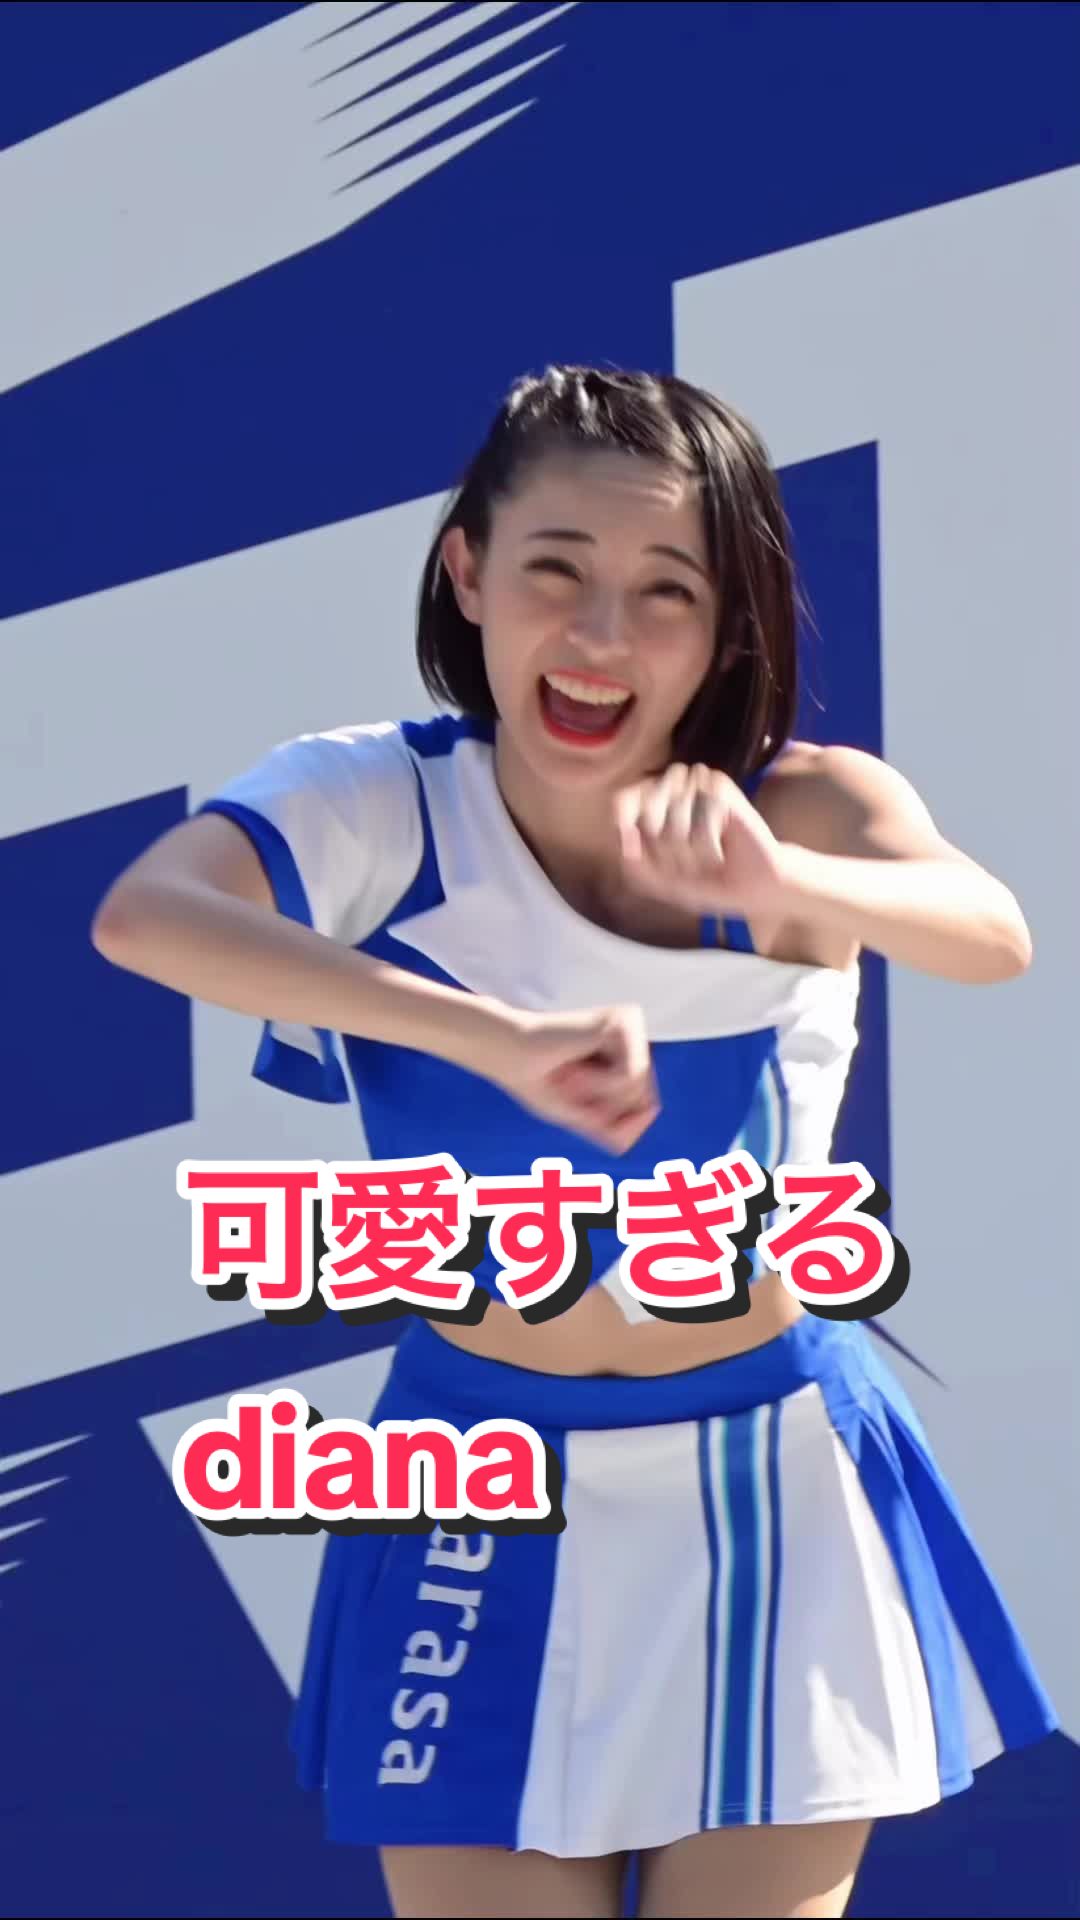 【美人チアリーダーの可愛いダンス！】可愛すぎるdiana #kawaii #ブレイブtv #bravetv #japanesegirl #cheerleader #sarasa 